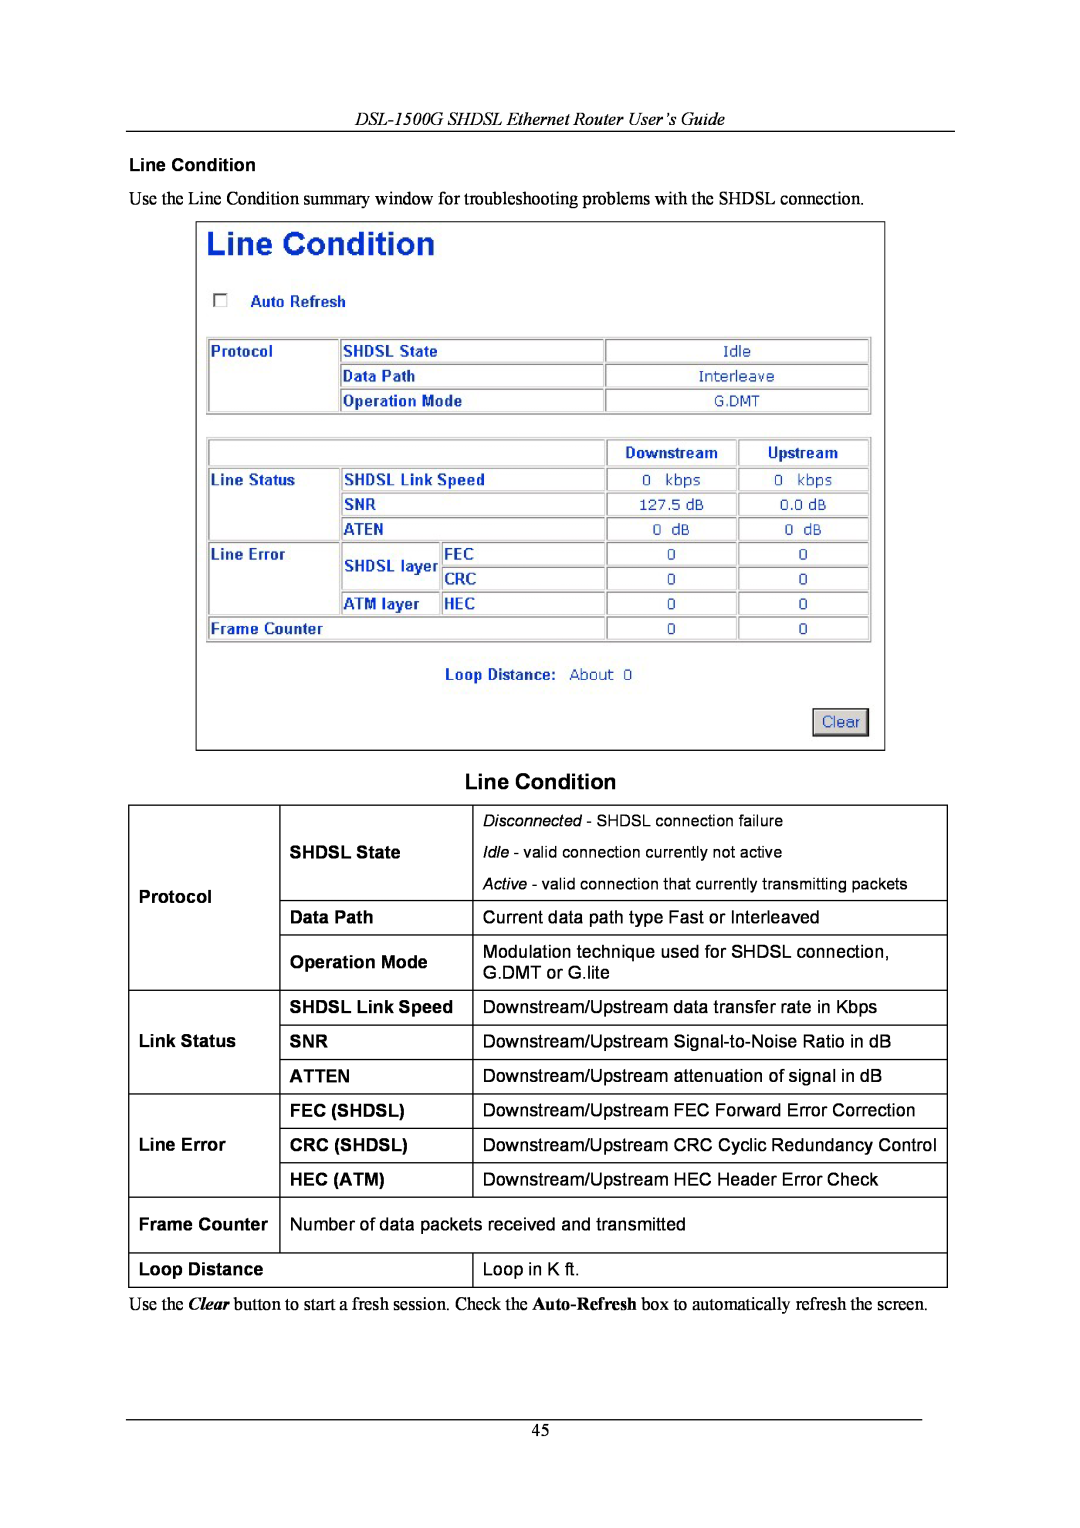 D-Link manual Line Condition, DSL-1500G SHDSL Ethernet Router User’s Guide, Disconnected - SHDSL connection failure 